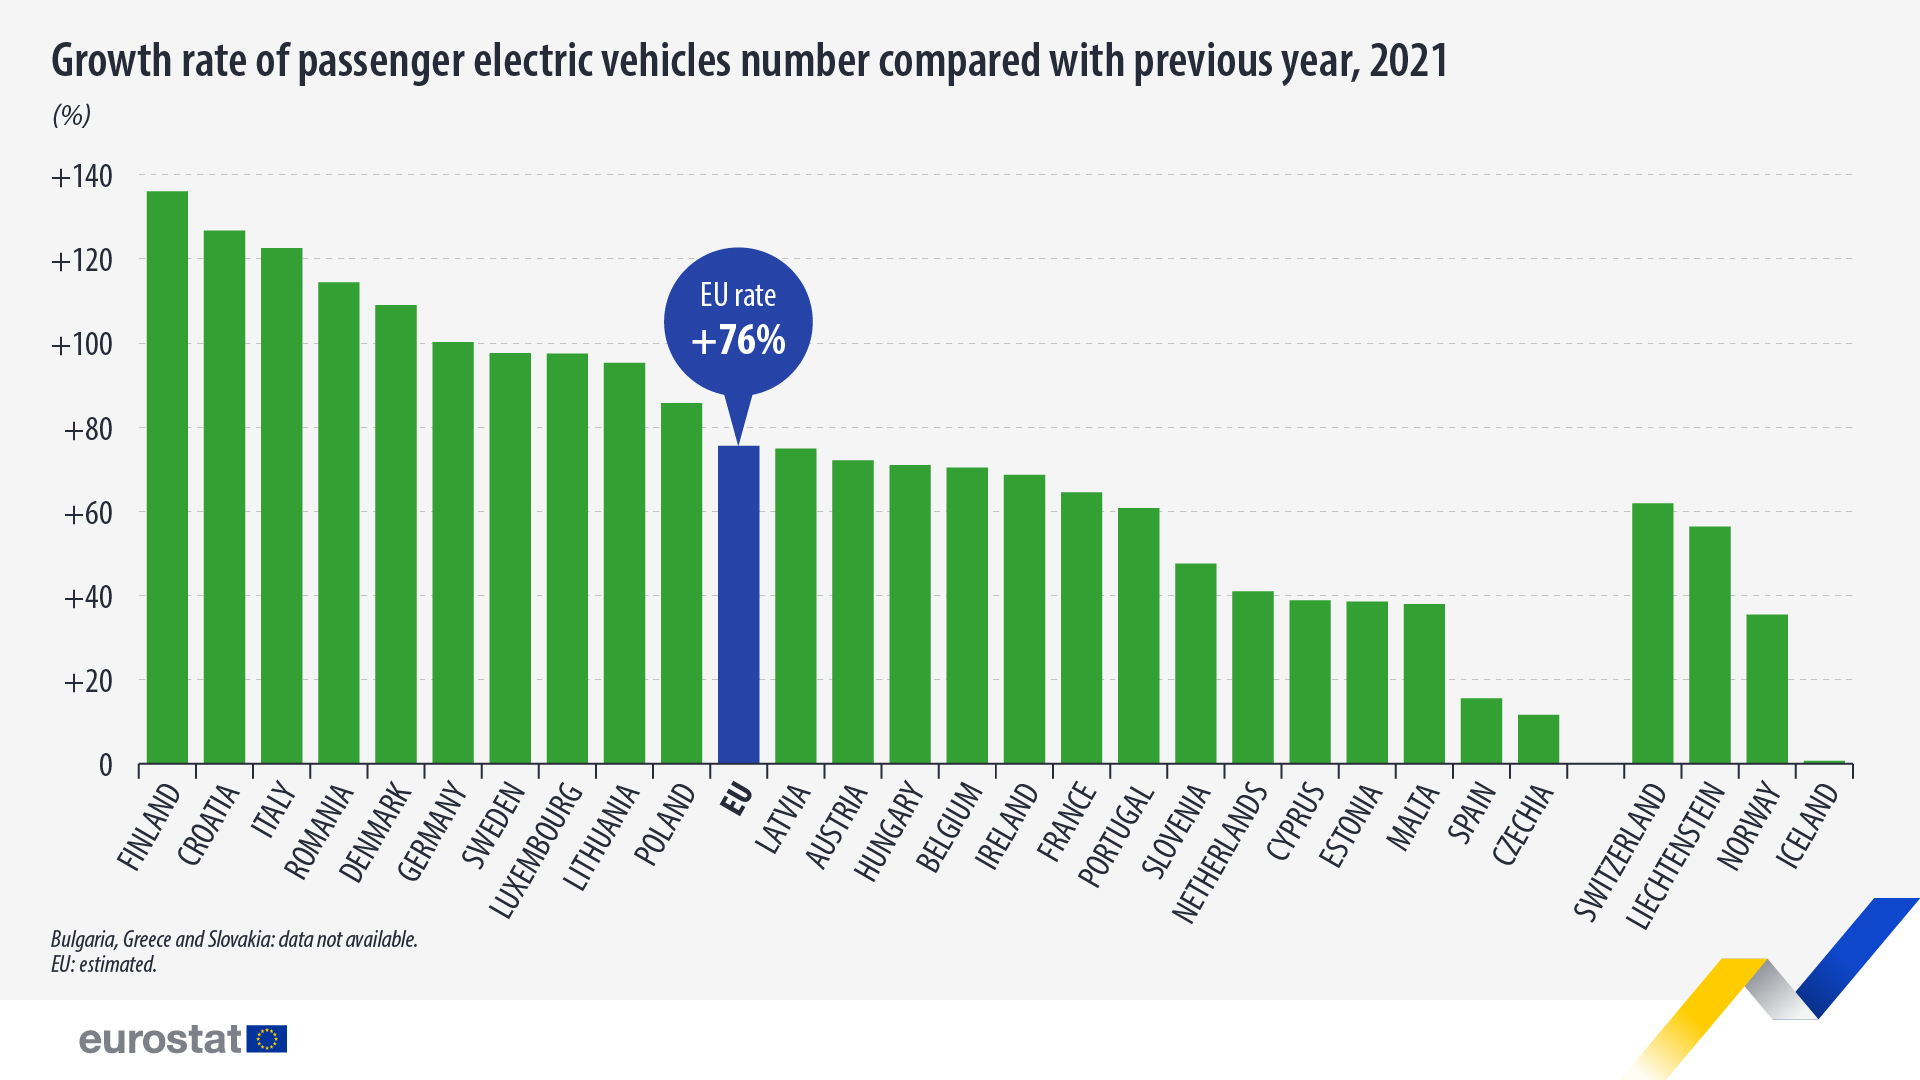 Γράφημα ράβδων: Ρυθμός αύξησης του αριθμού επιβατικών ηλεκτρικών οχημάτων σε σύγκριση με το προηγούμενο έτος, 2021, σε %